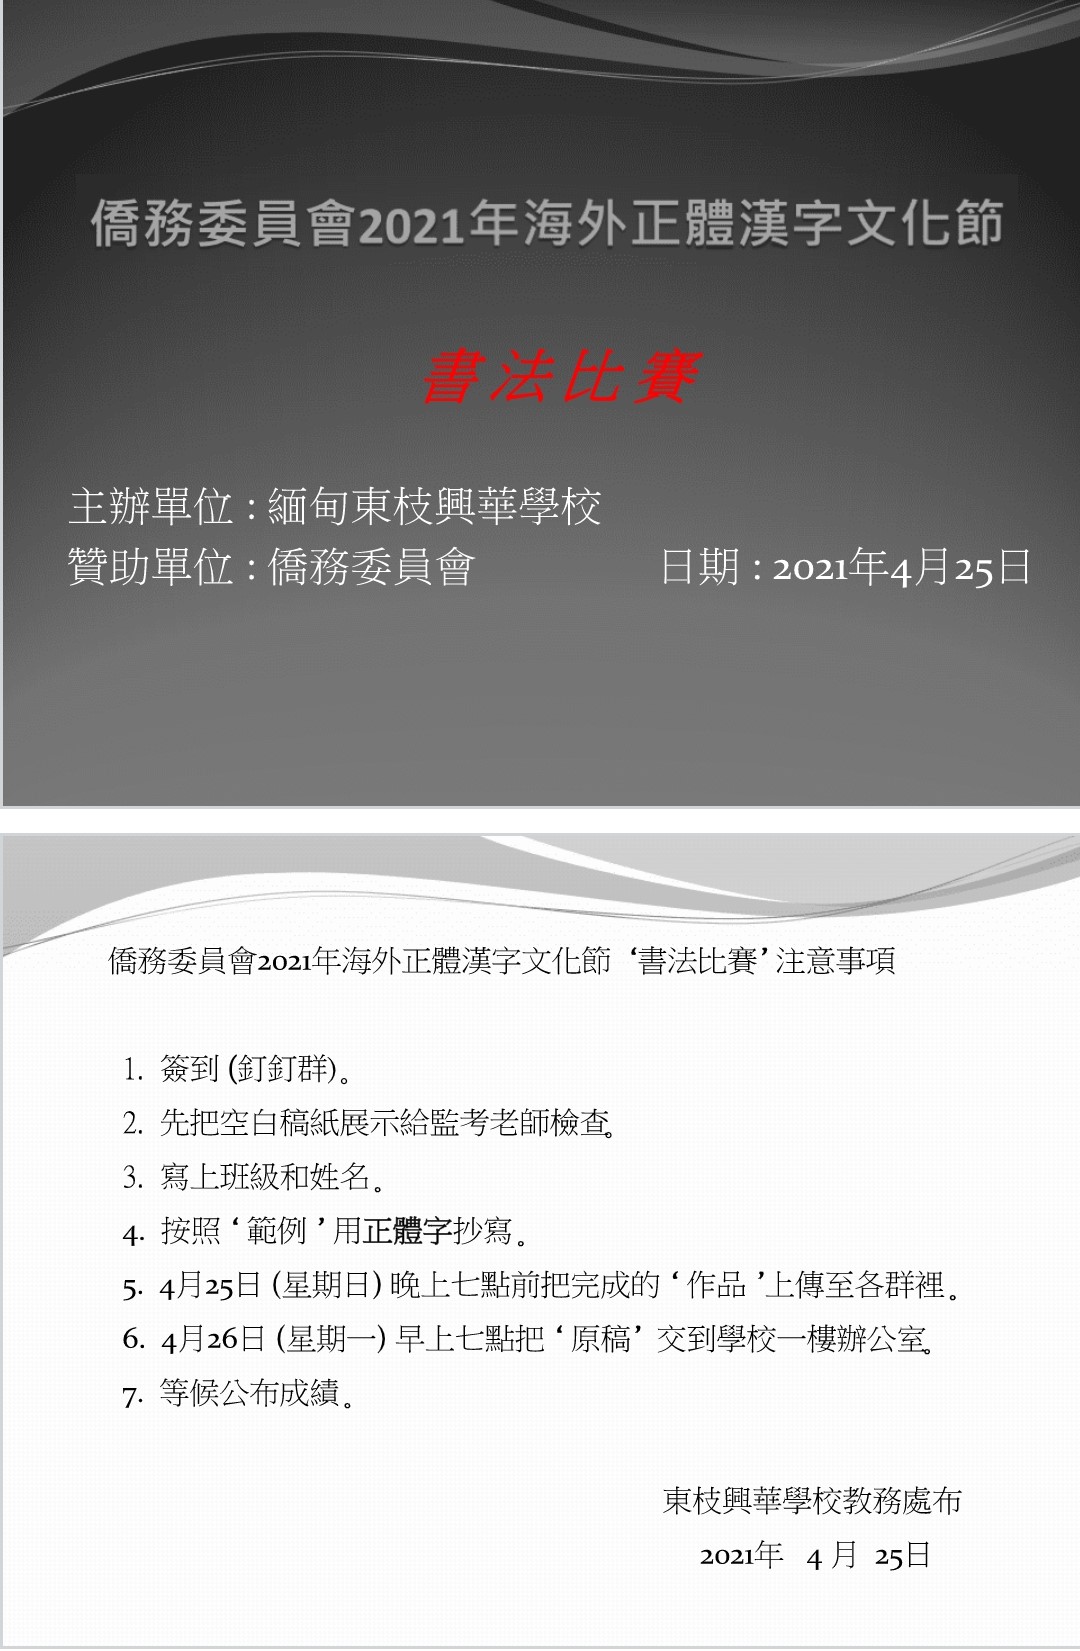 東枝興華學校正體漢字文化節-書法比賽的規則。